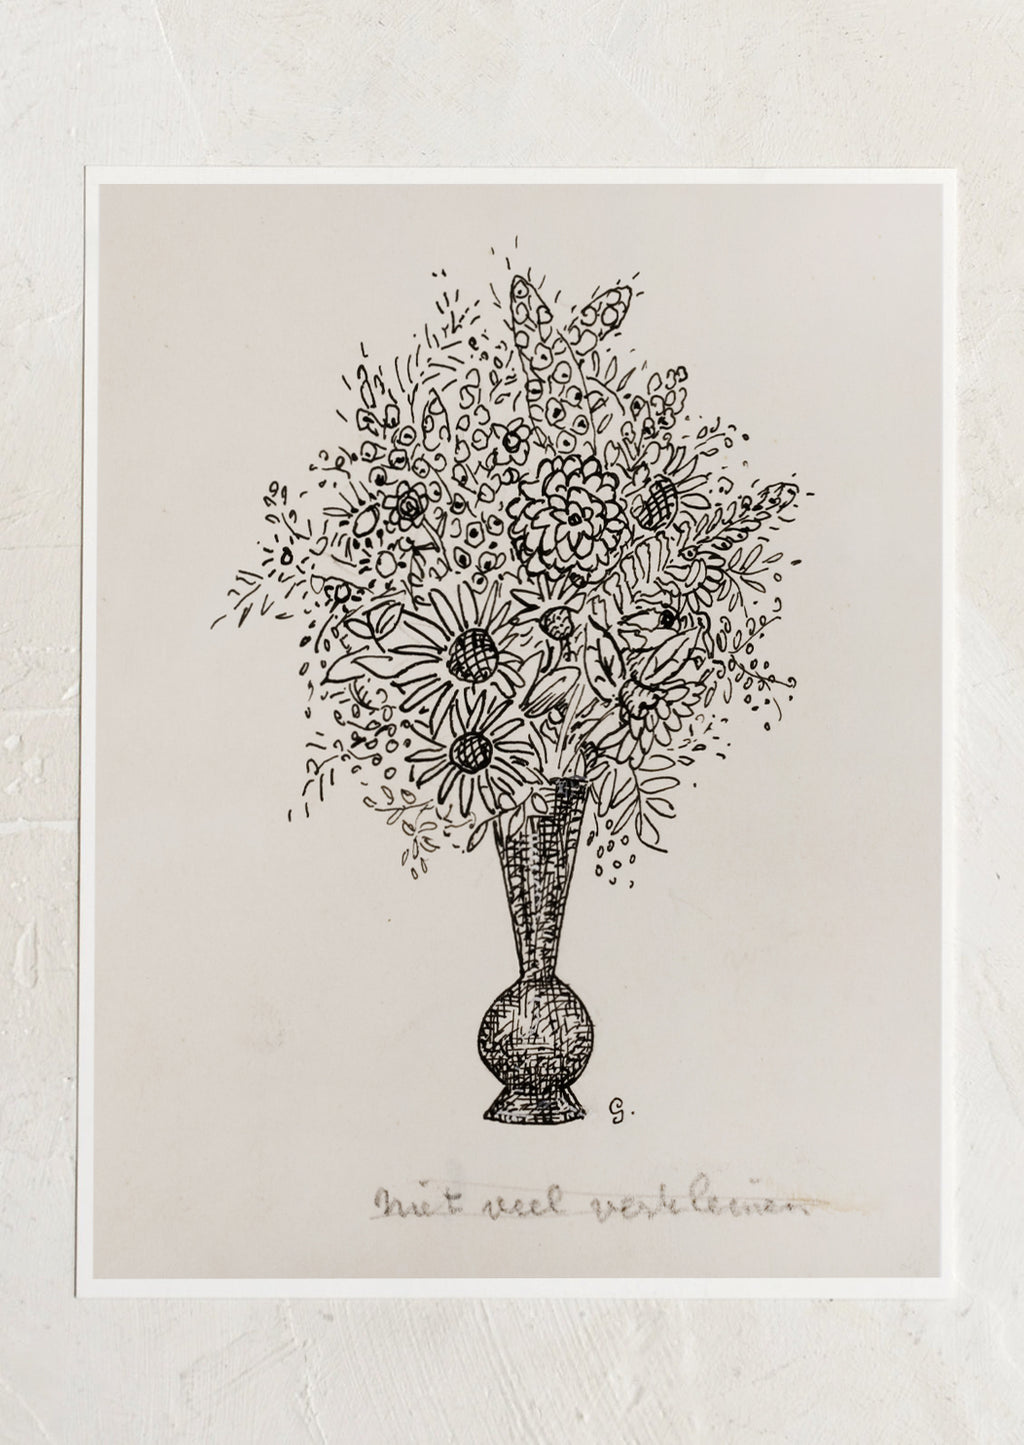 1: A vintage inspired art print in beige and black of sketch of flowers in vase.